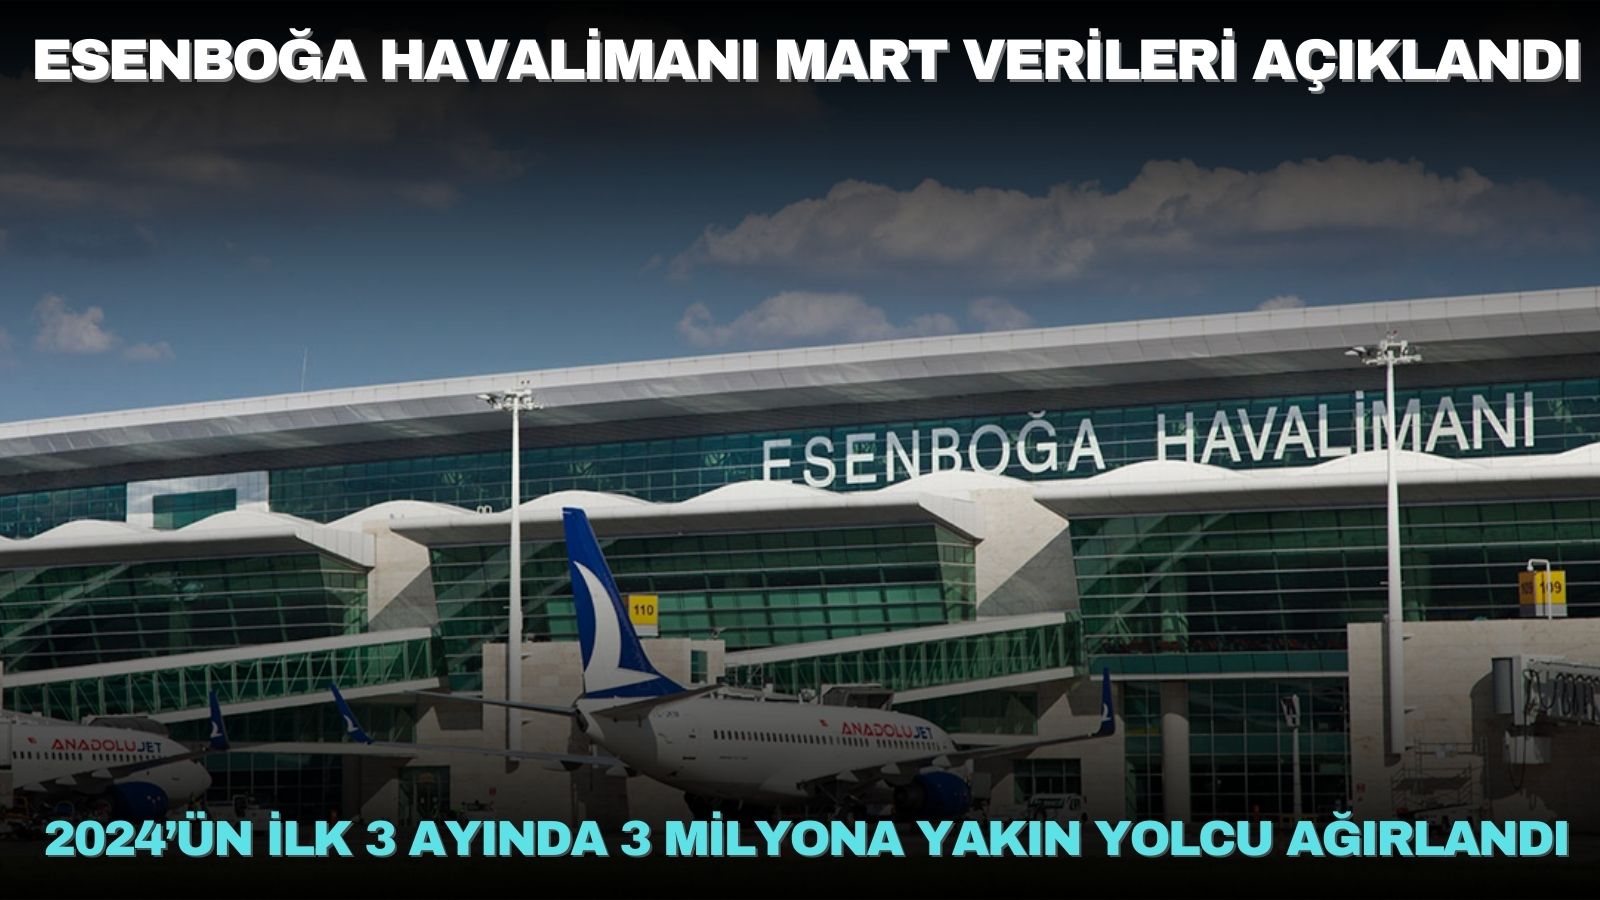 tav-esenboga-havalimani-2024un-ilk-3-ayinda-3-milyona-yakin-yolcu-agirladi